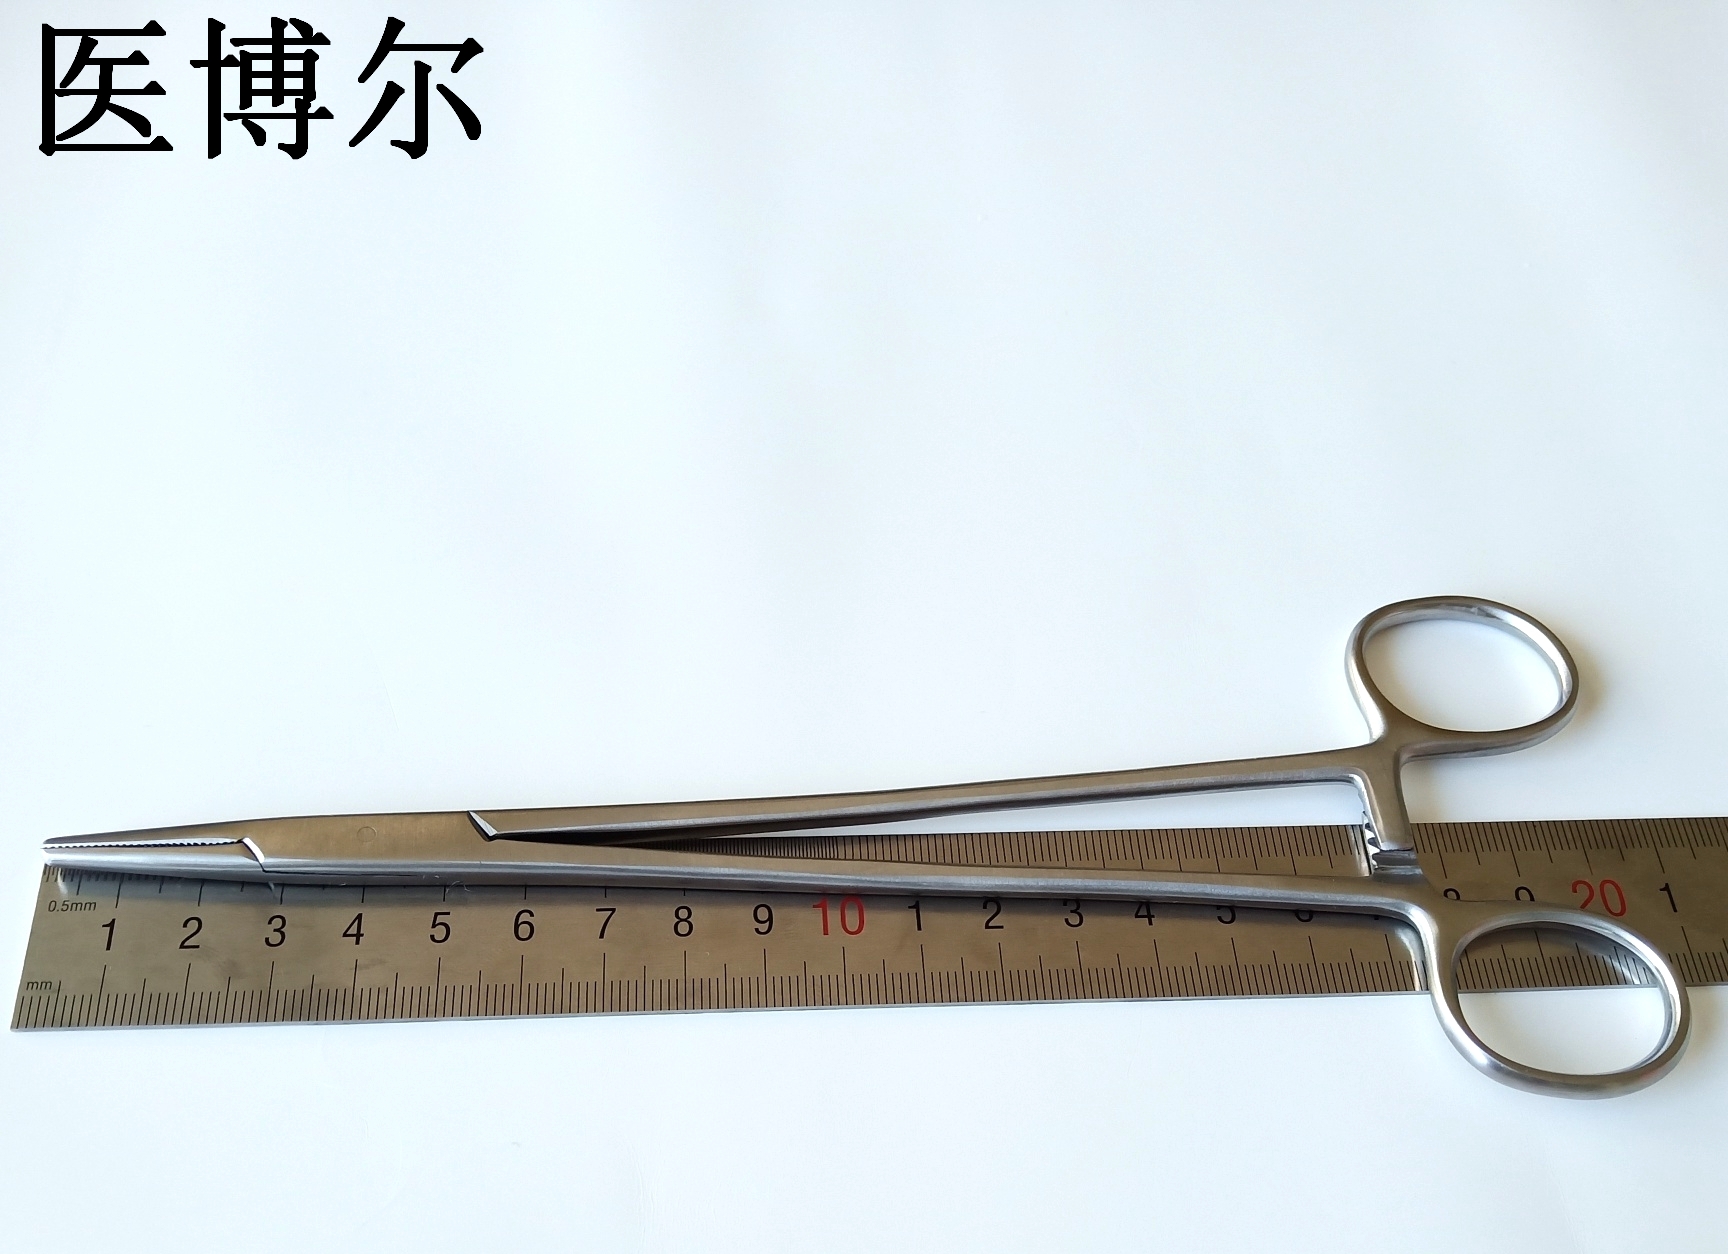 20cm粗针持针器 (1)_看图王.jpg